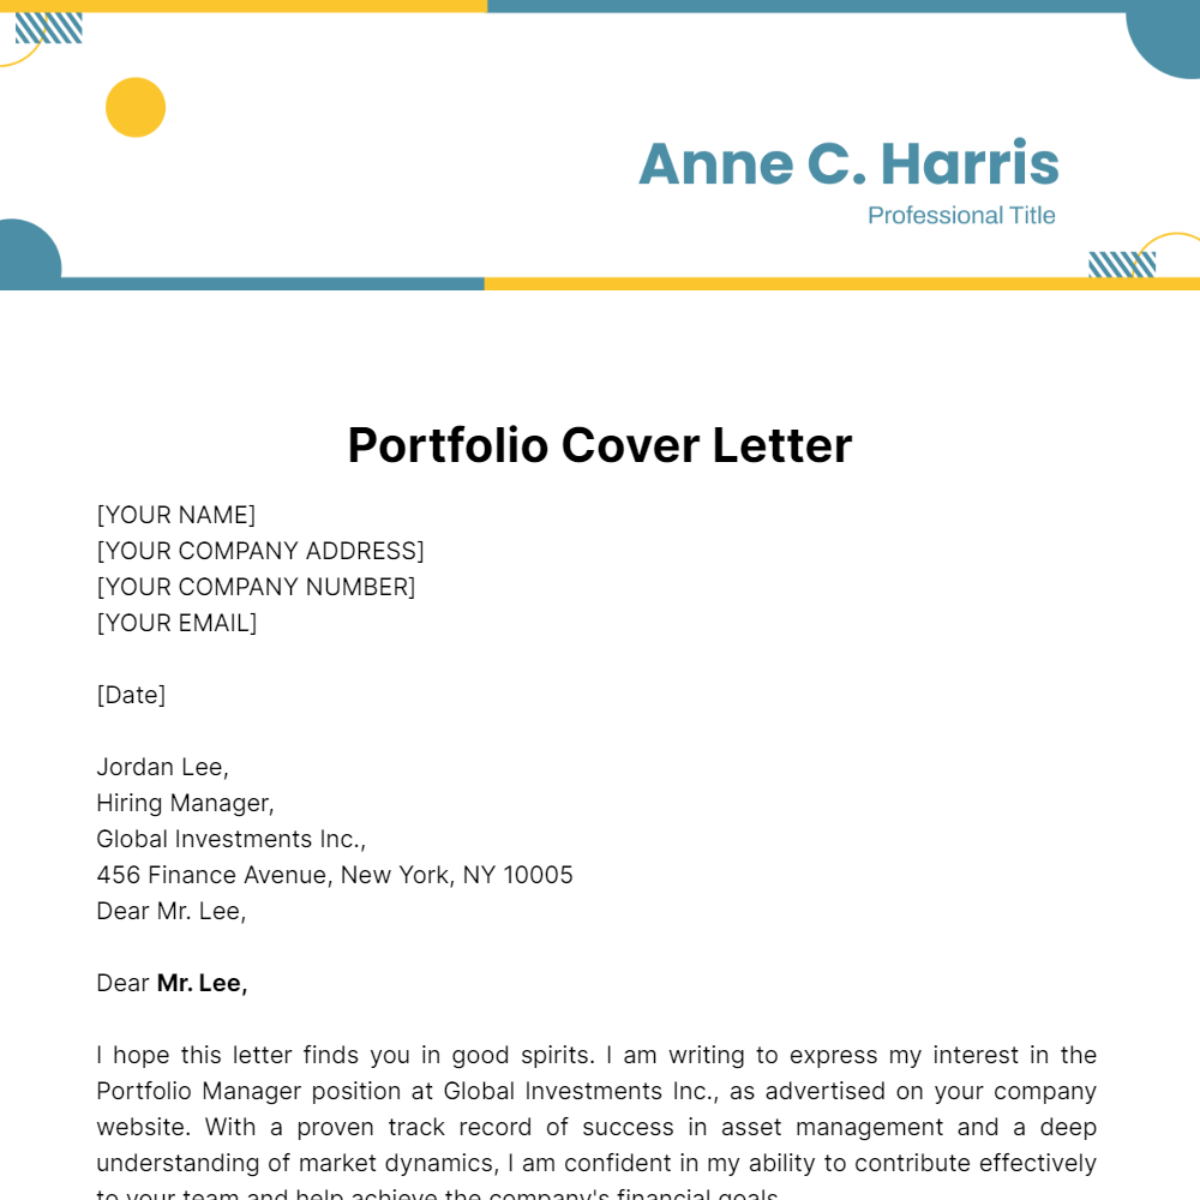 Portfolio Cover Letter Template